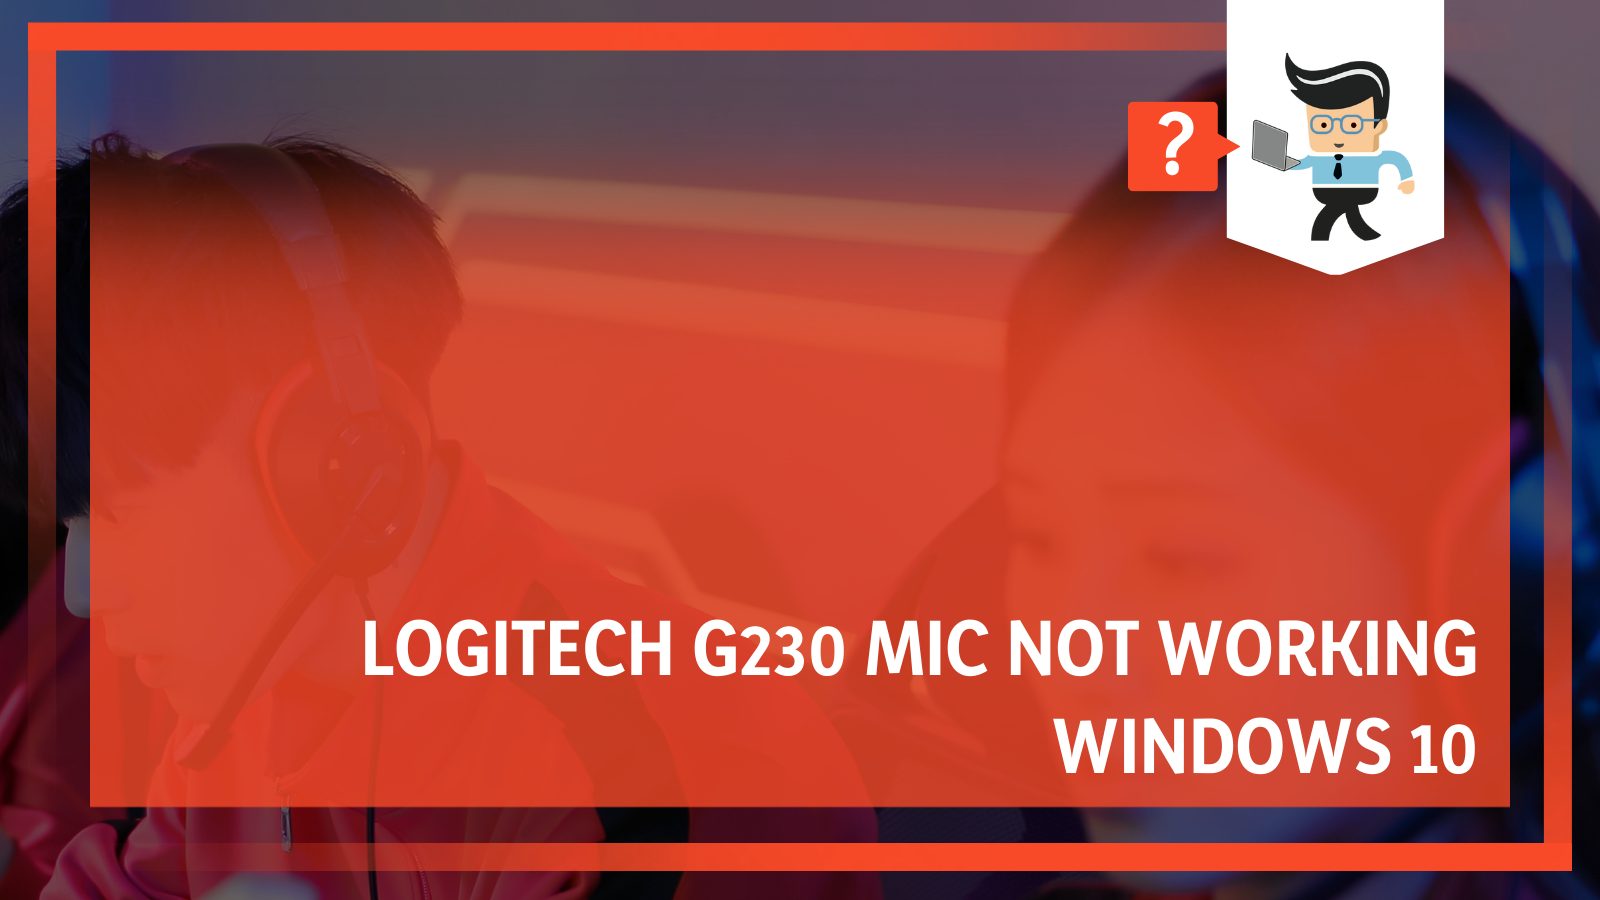 Logitech G230 Mic Not Working Windows 10